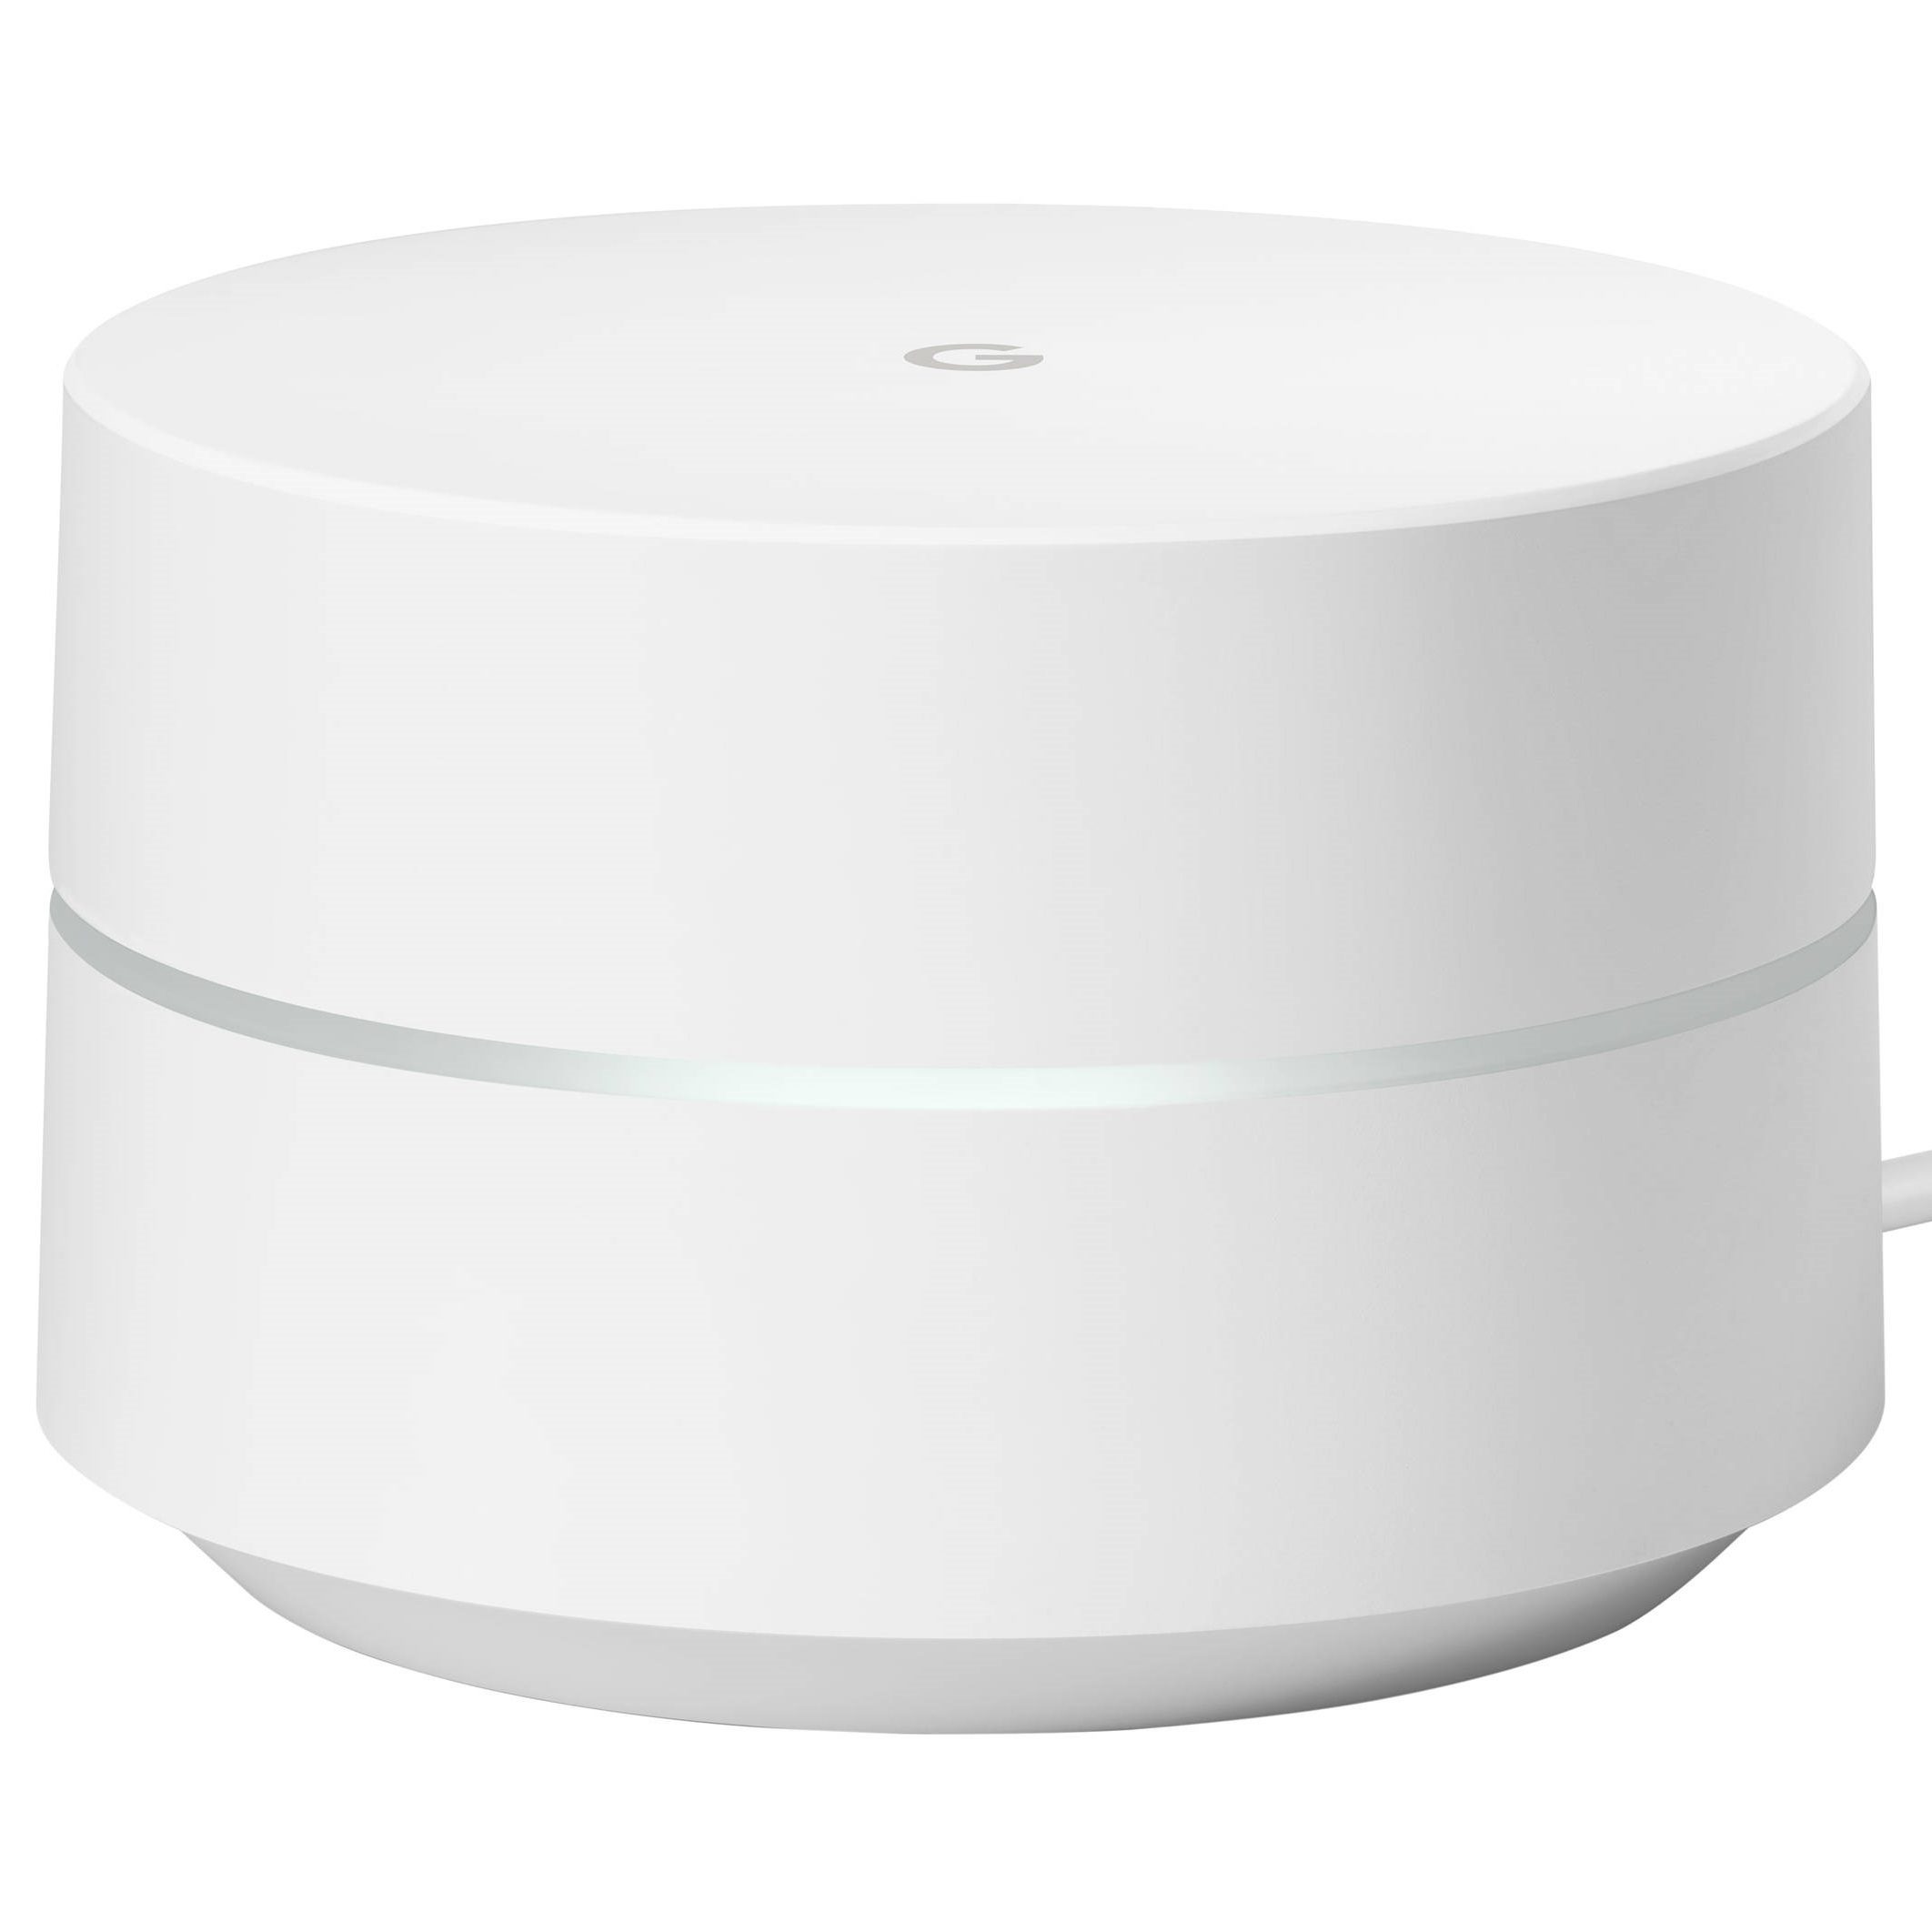 Image 1 : [Test] Google Wifi : que vaut le routeur de Google ?